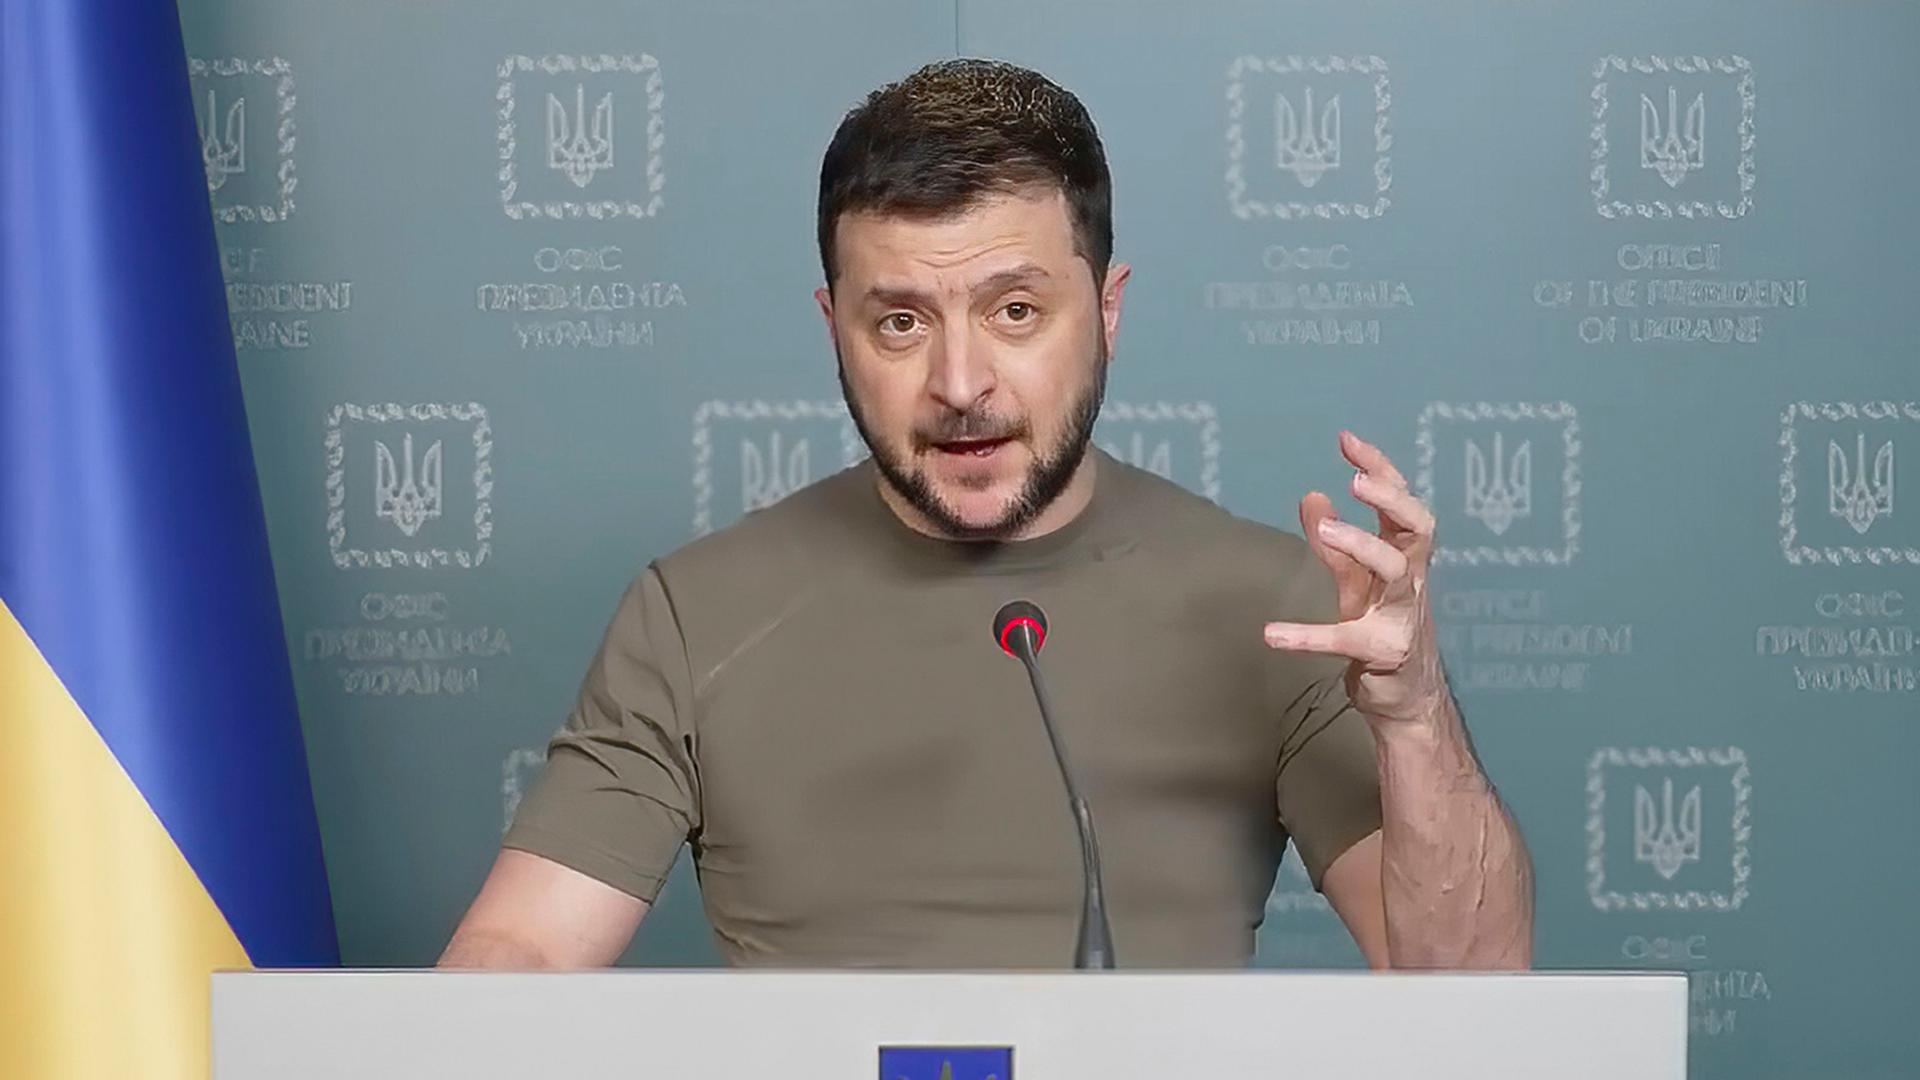 Der ukrainischen Präsident Selenskyj steht hinter einem Rednerpult, schaut in die Kamera und spricht in ein Mikrofon. Mit einer Hand gestikuliert er.